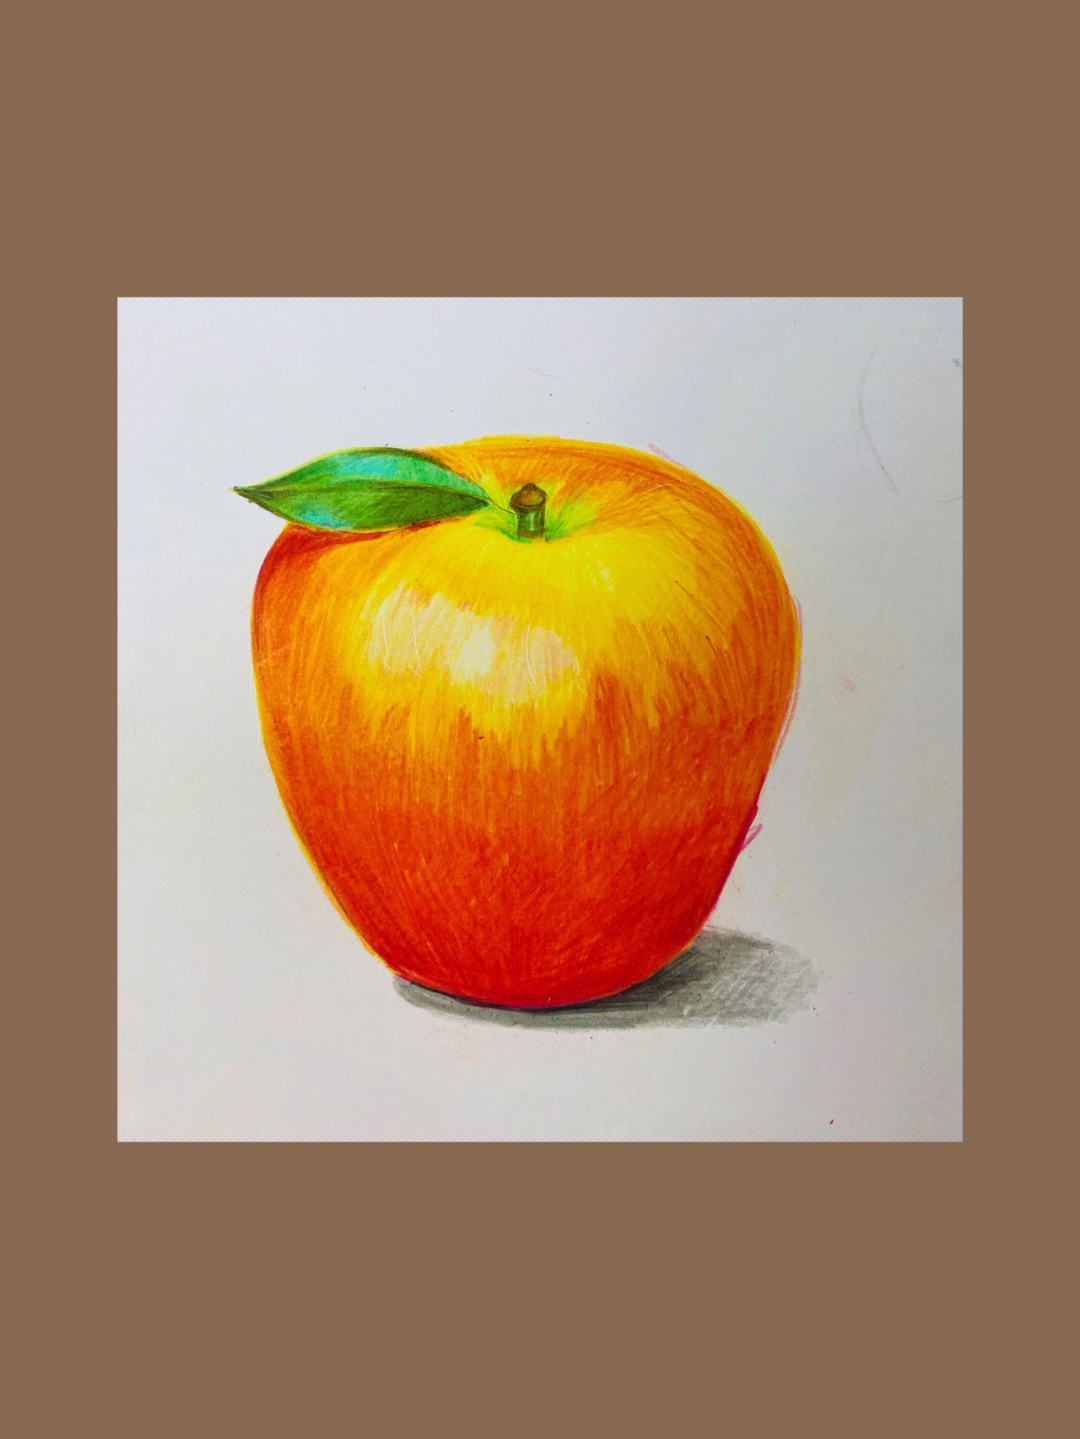 苹果绘画简单图片